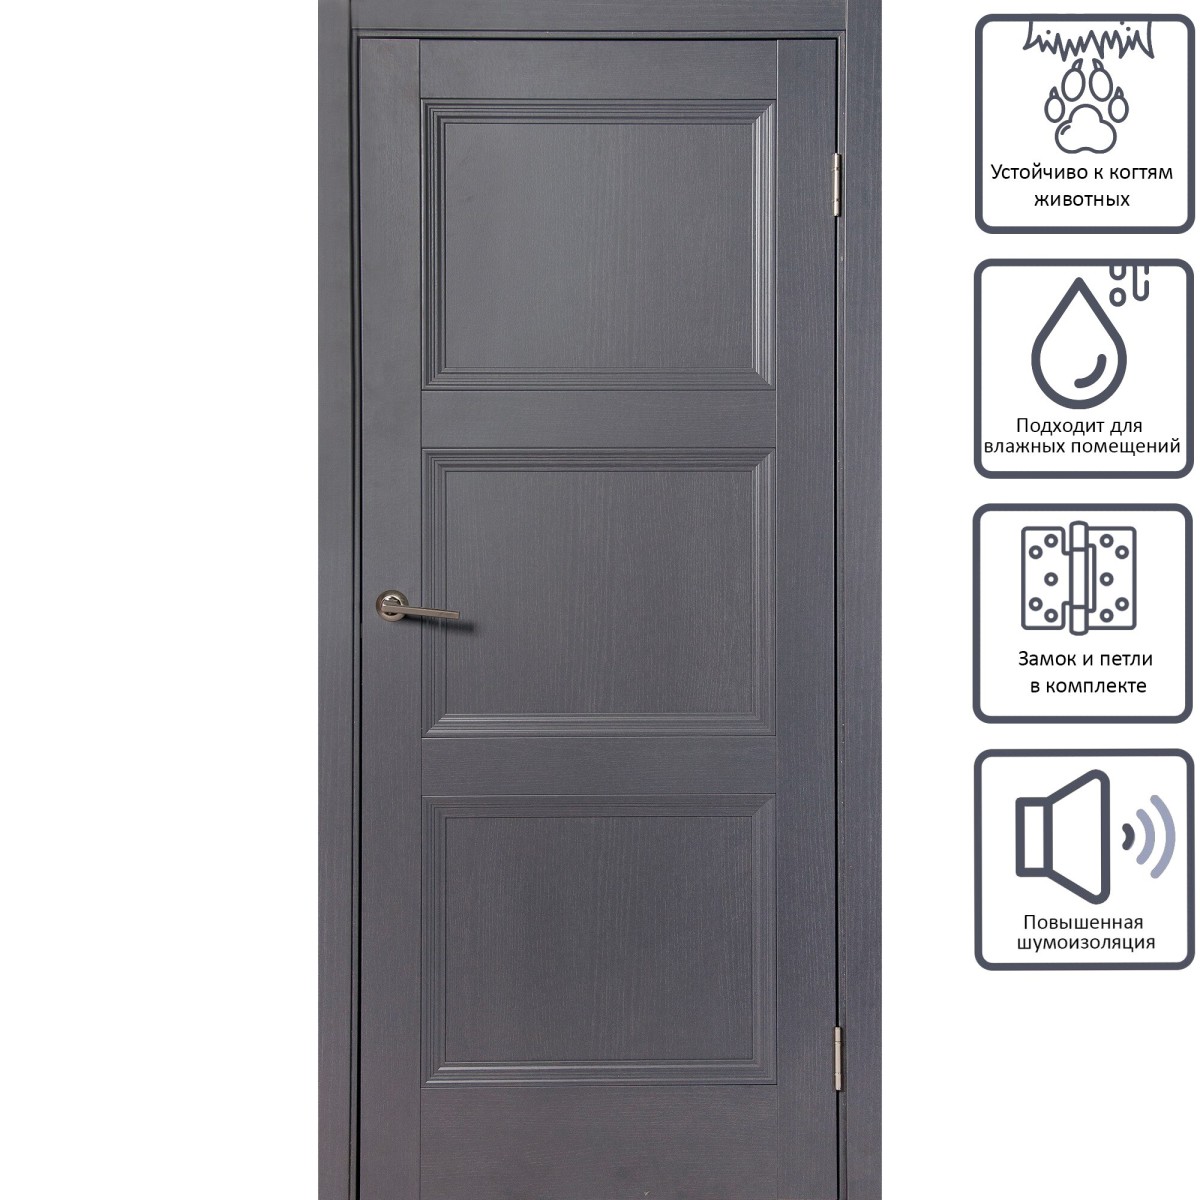 Дверь межкомнатная глухая с замком и петлями в комплекте Трилло 80x200 см , Hardflex, цвет грей